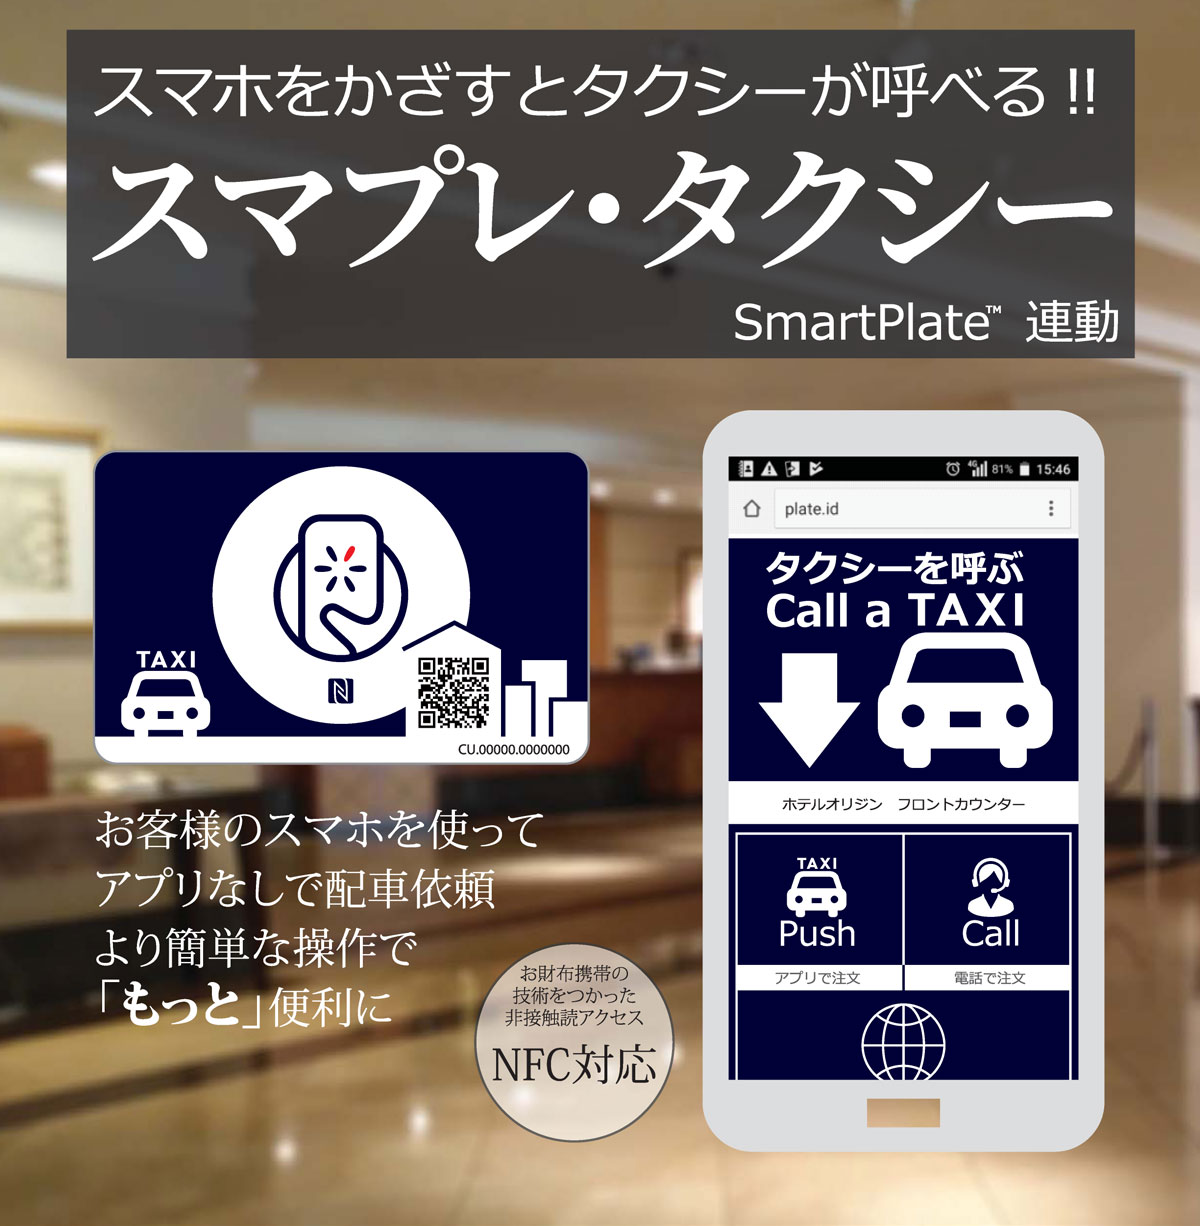 スマプレ・タクシー スマホをかざすとタクシーが呼べる!! SmartPlate ™ 連動